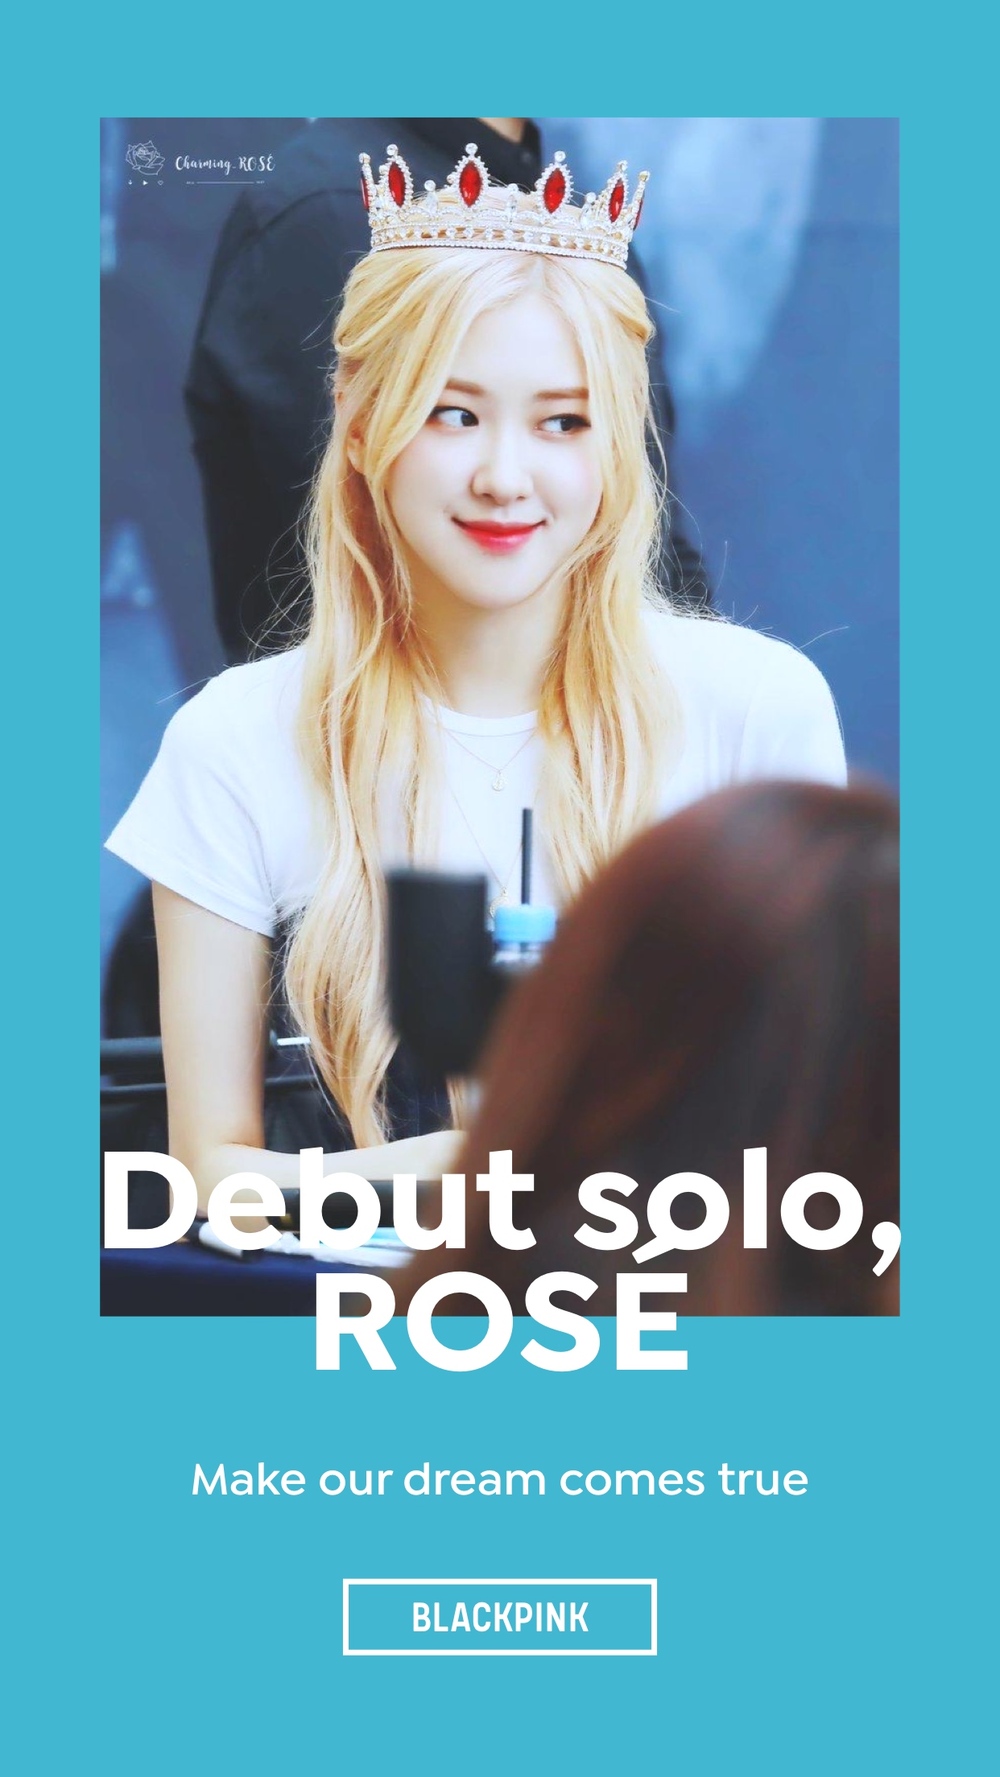  
Rất nhiều fan đang mong chờ màn debut solo của Rosé.